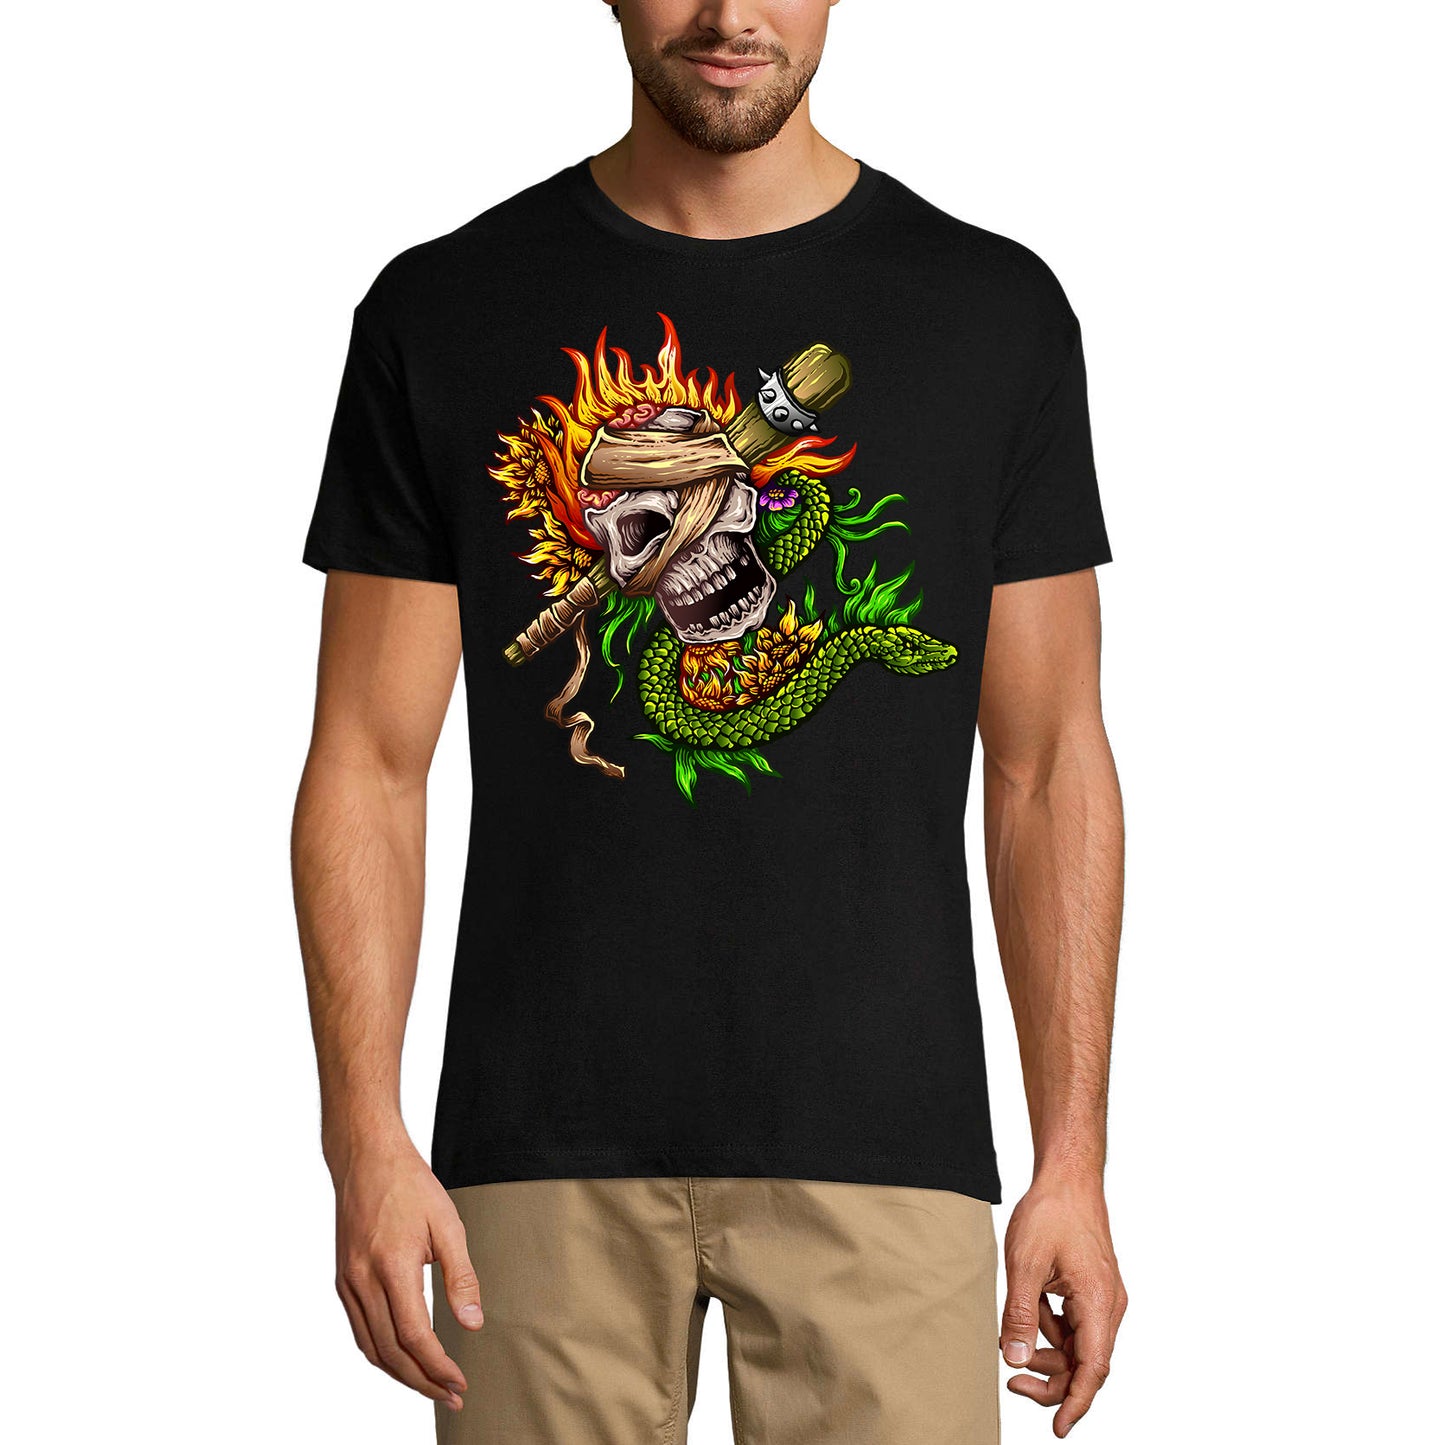 ULTRABASIC Men's Graphic T-Shirt Fire Skull Snake - Skull Shirt for Men